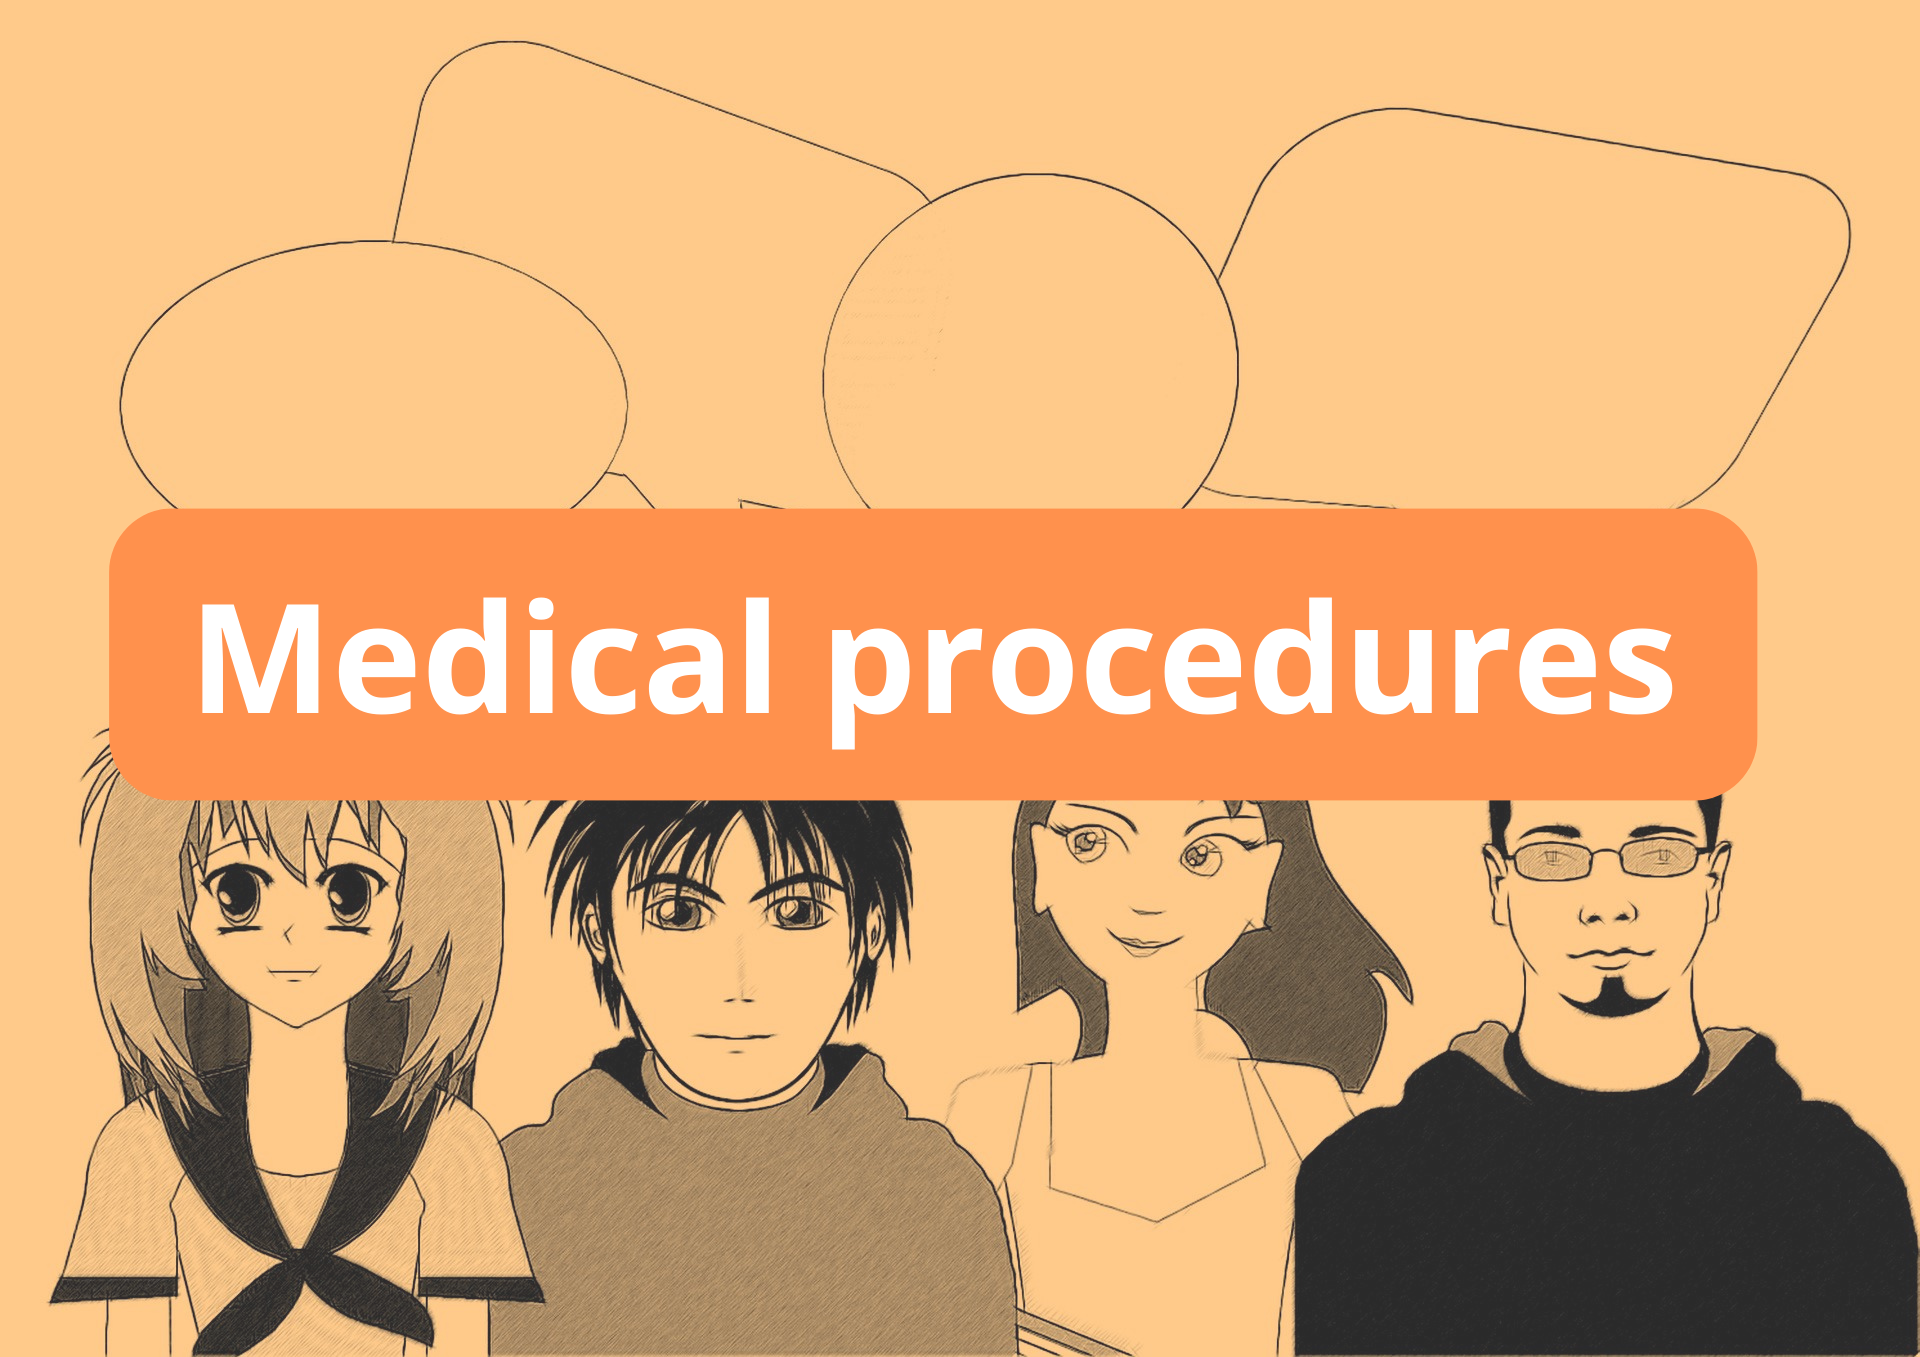 Medical procedures